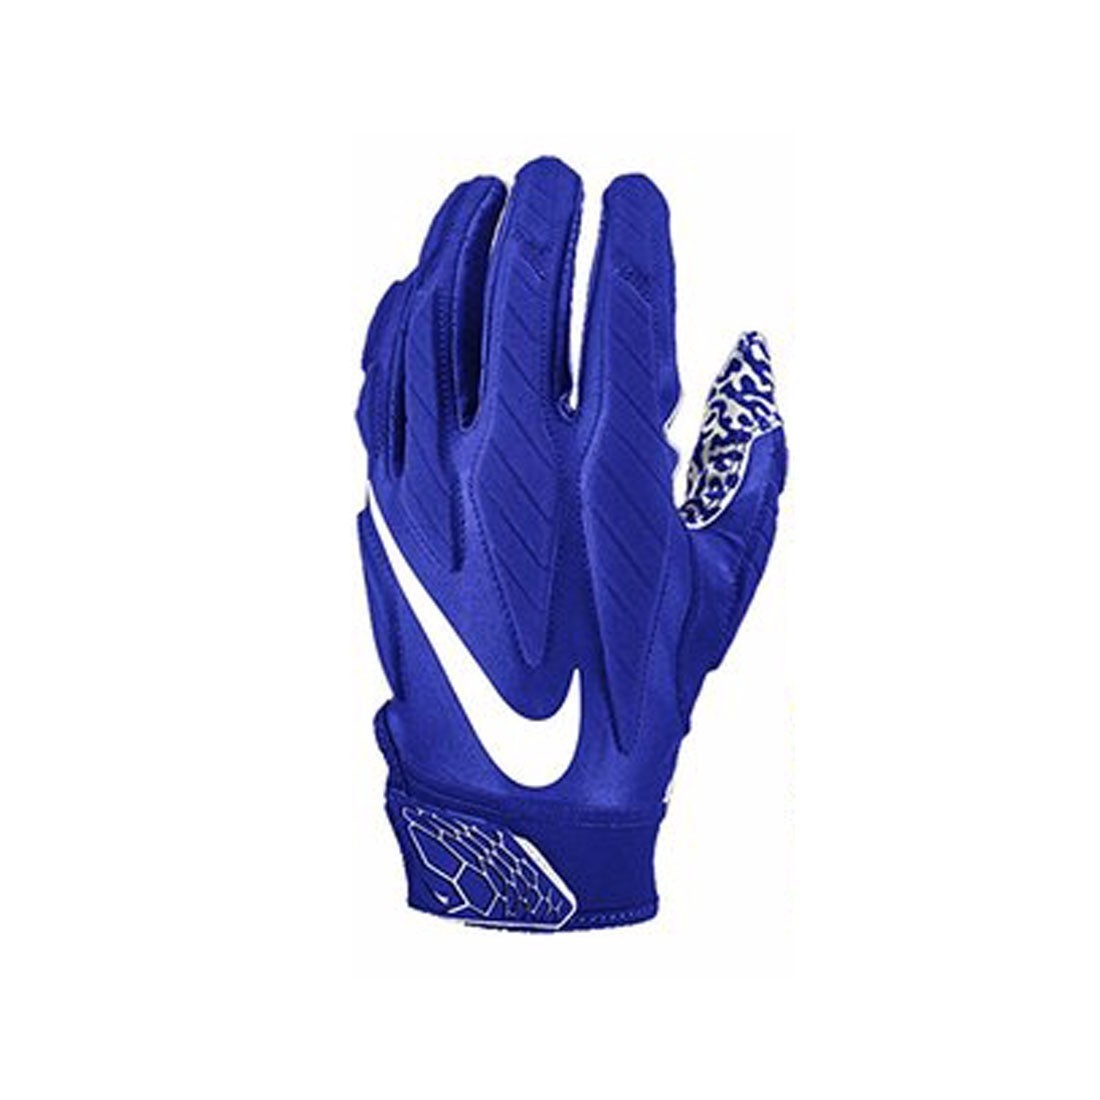 nike men's superbad 5.0 receiver gloves